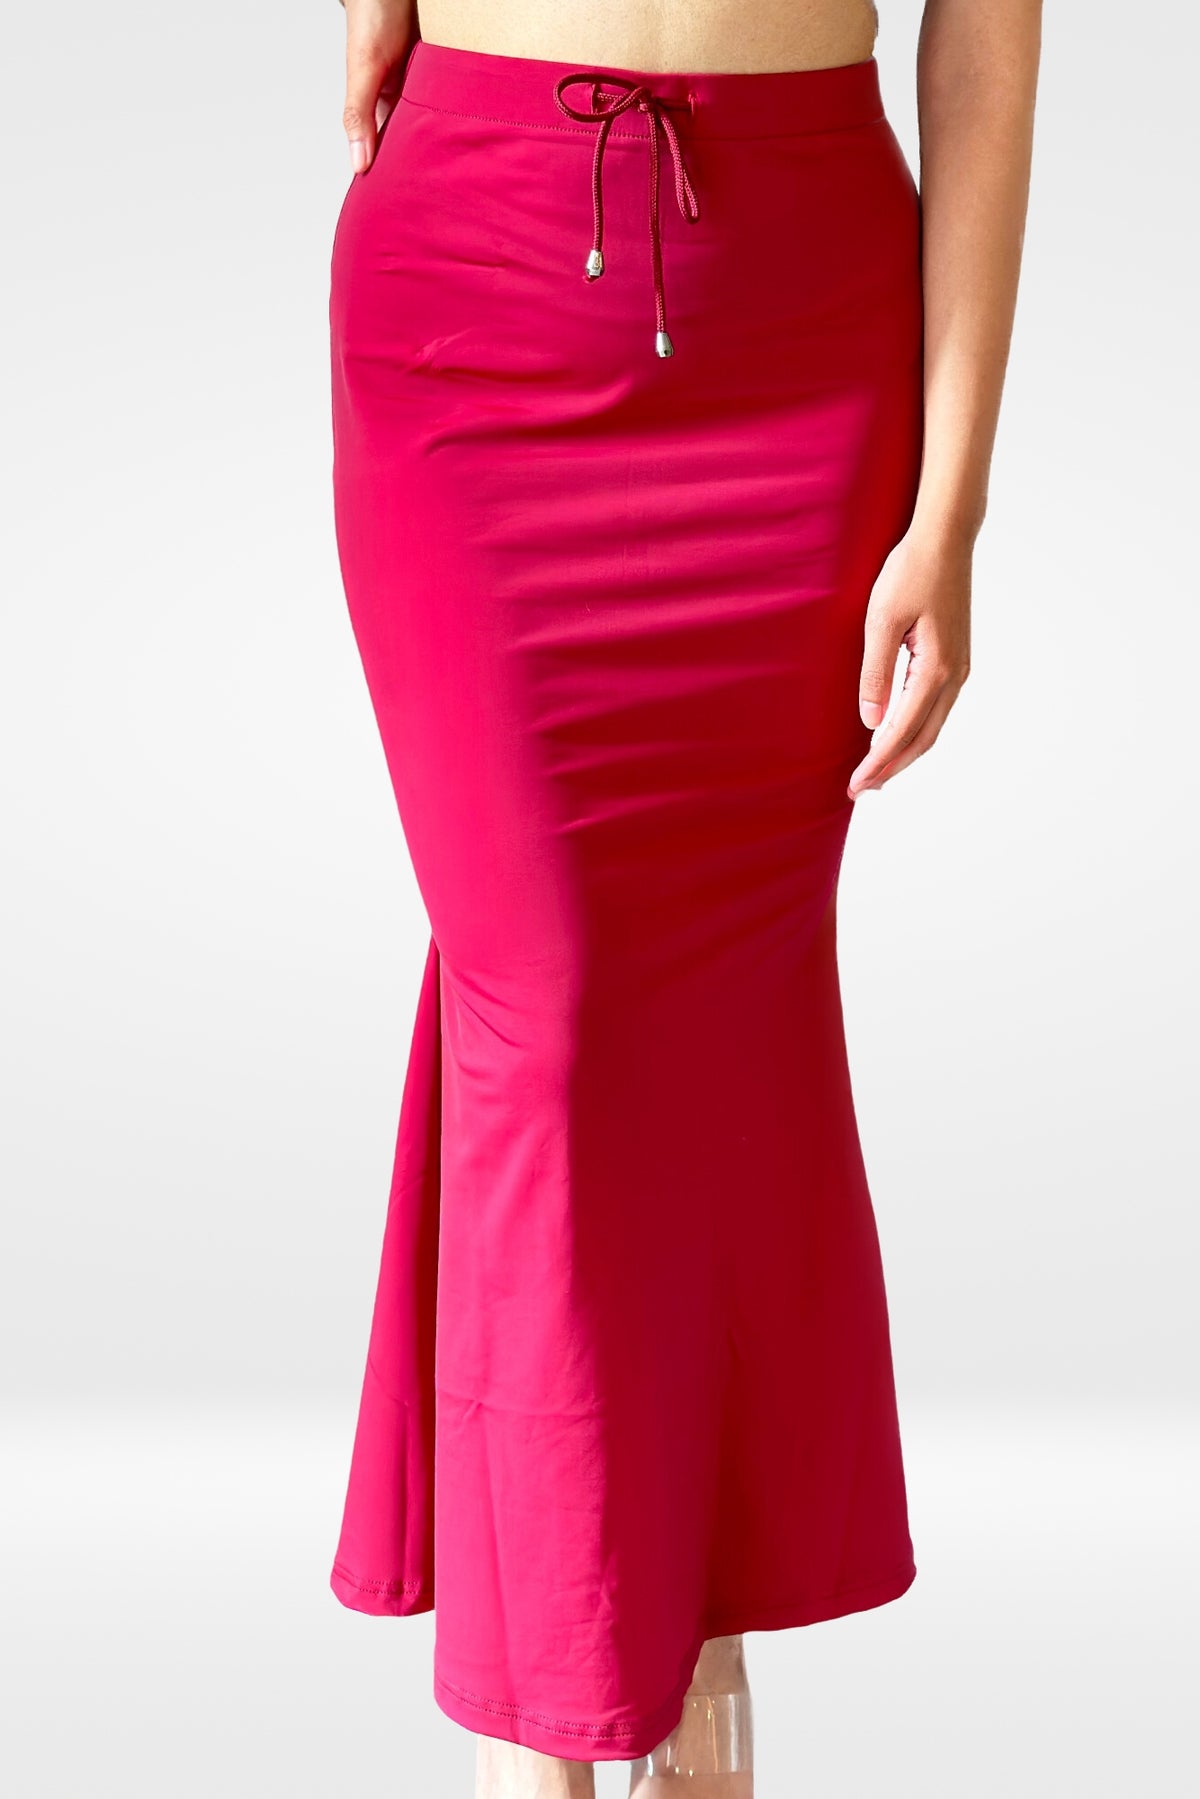 Red Saree Shaper, Ihara Sculpt-fit Petticoat